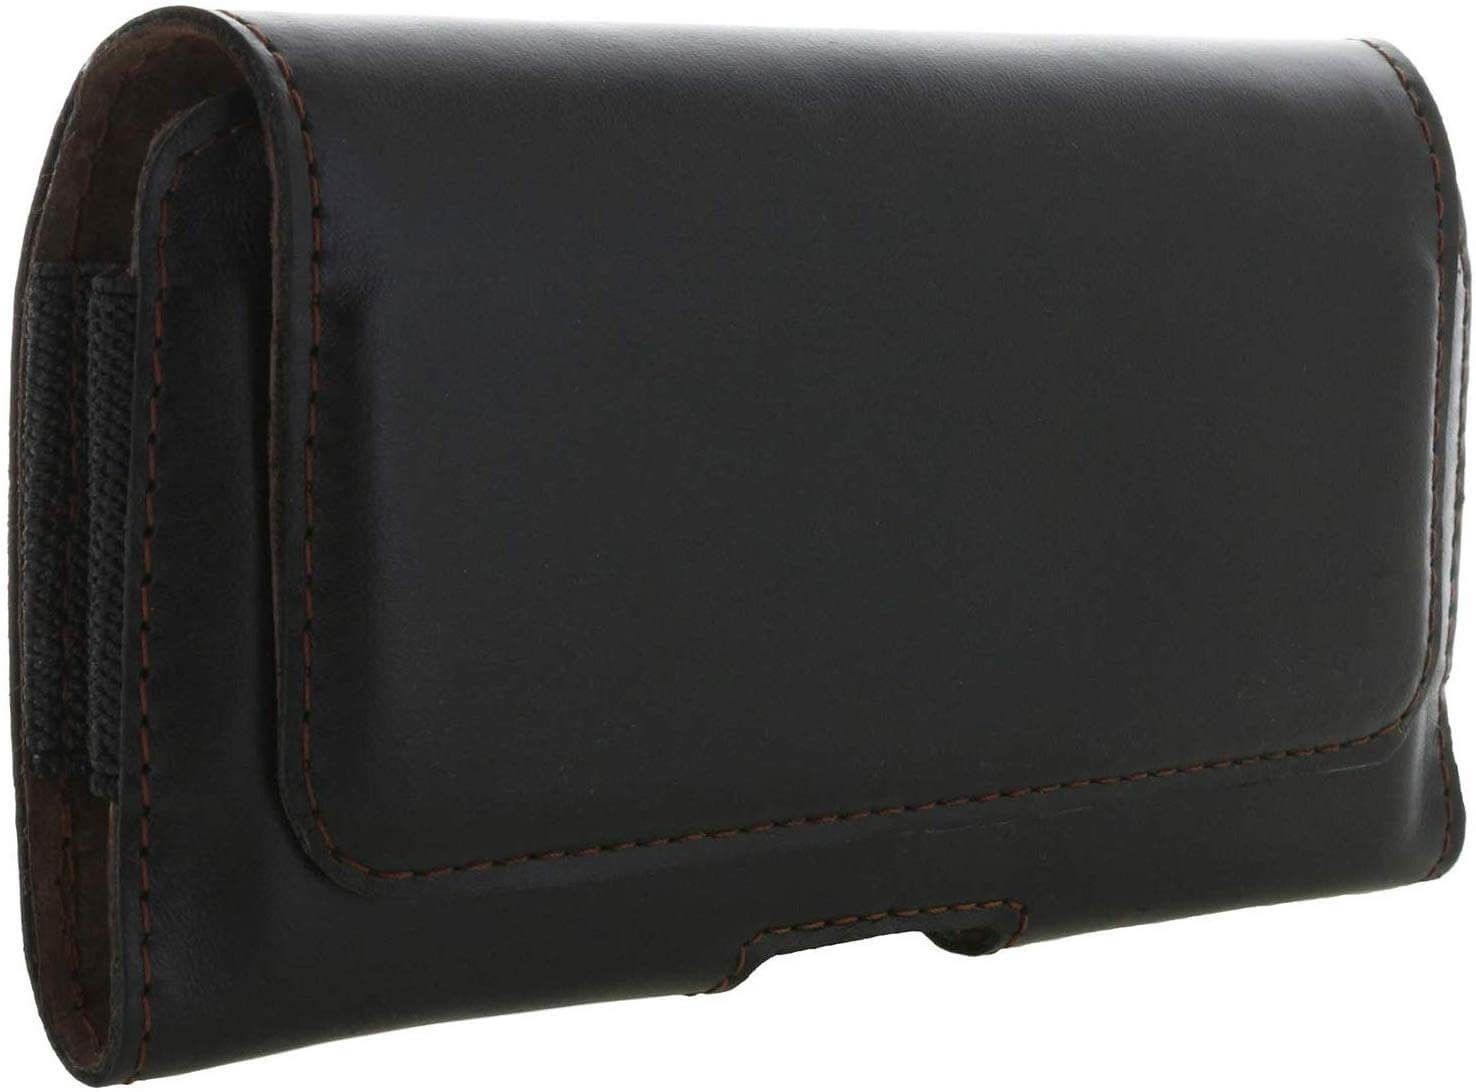 Honju Horizon Smooth Leather Belt Case